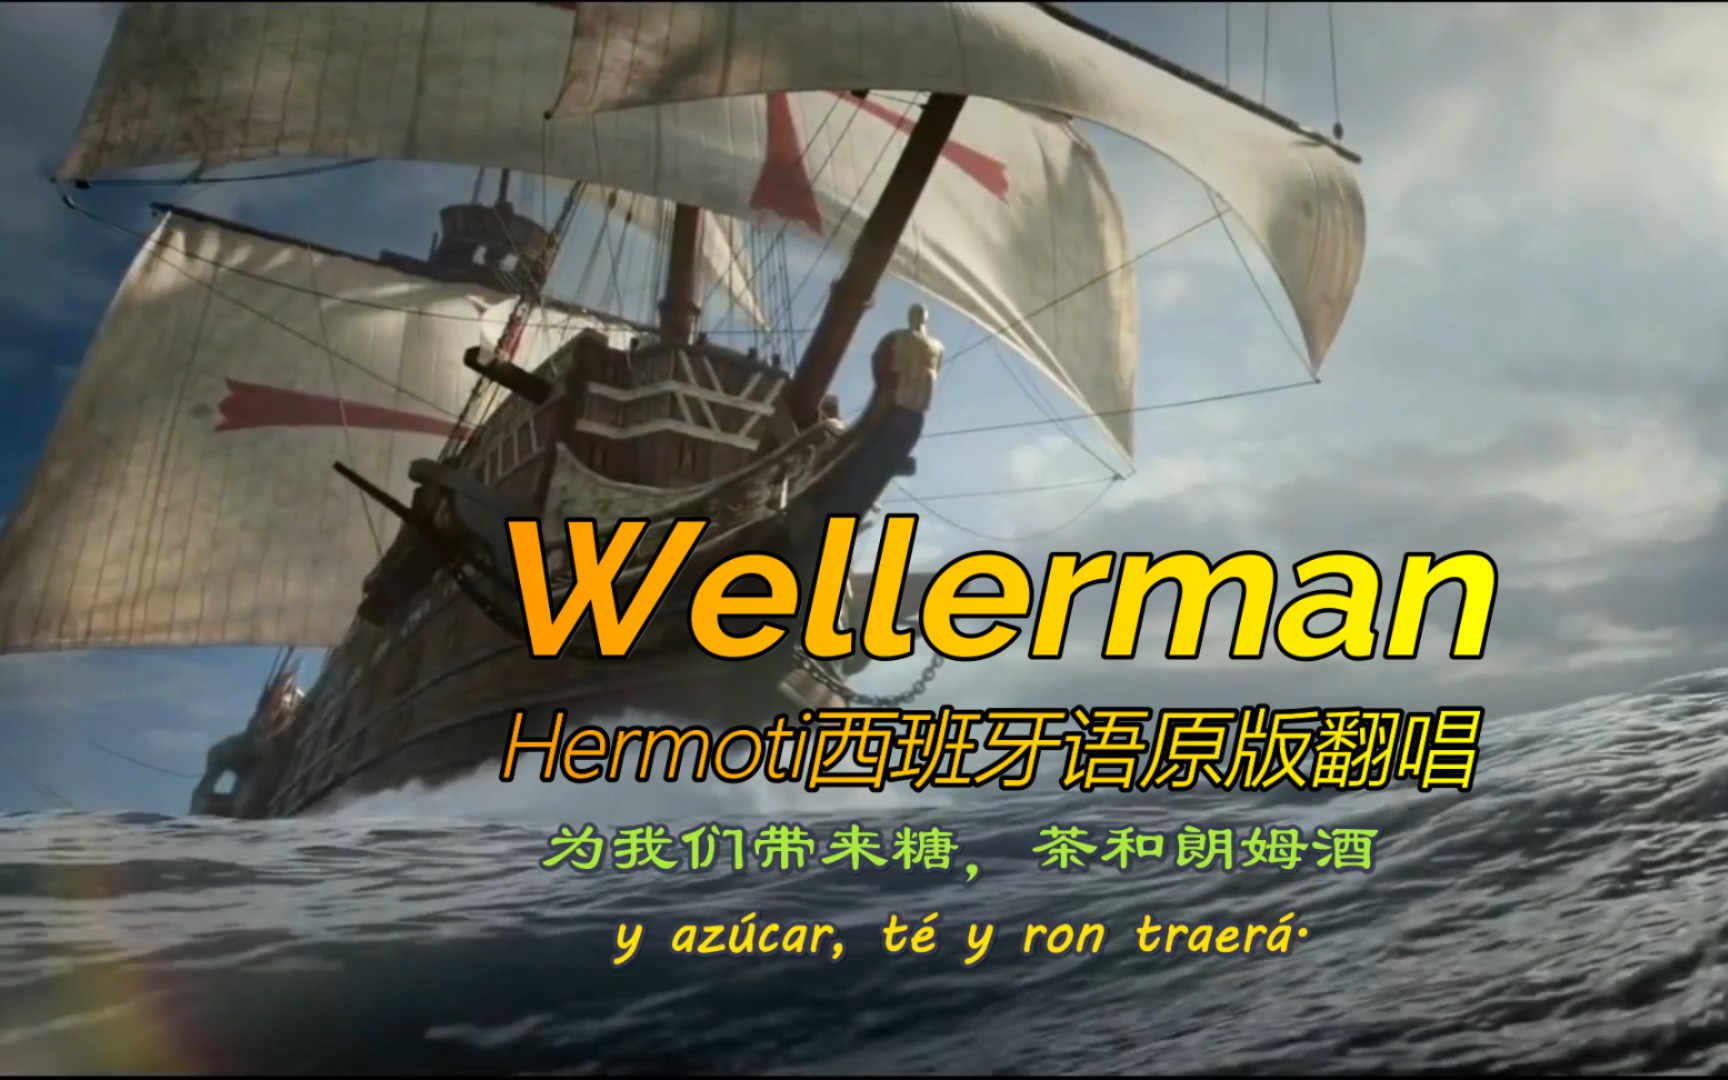 【中西字幕】【Hermoti】The Wellerman,节奏轻快的西班牙语男声版